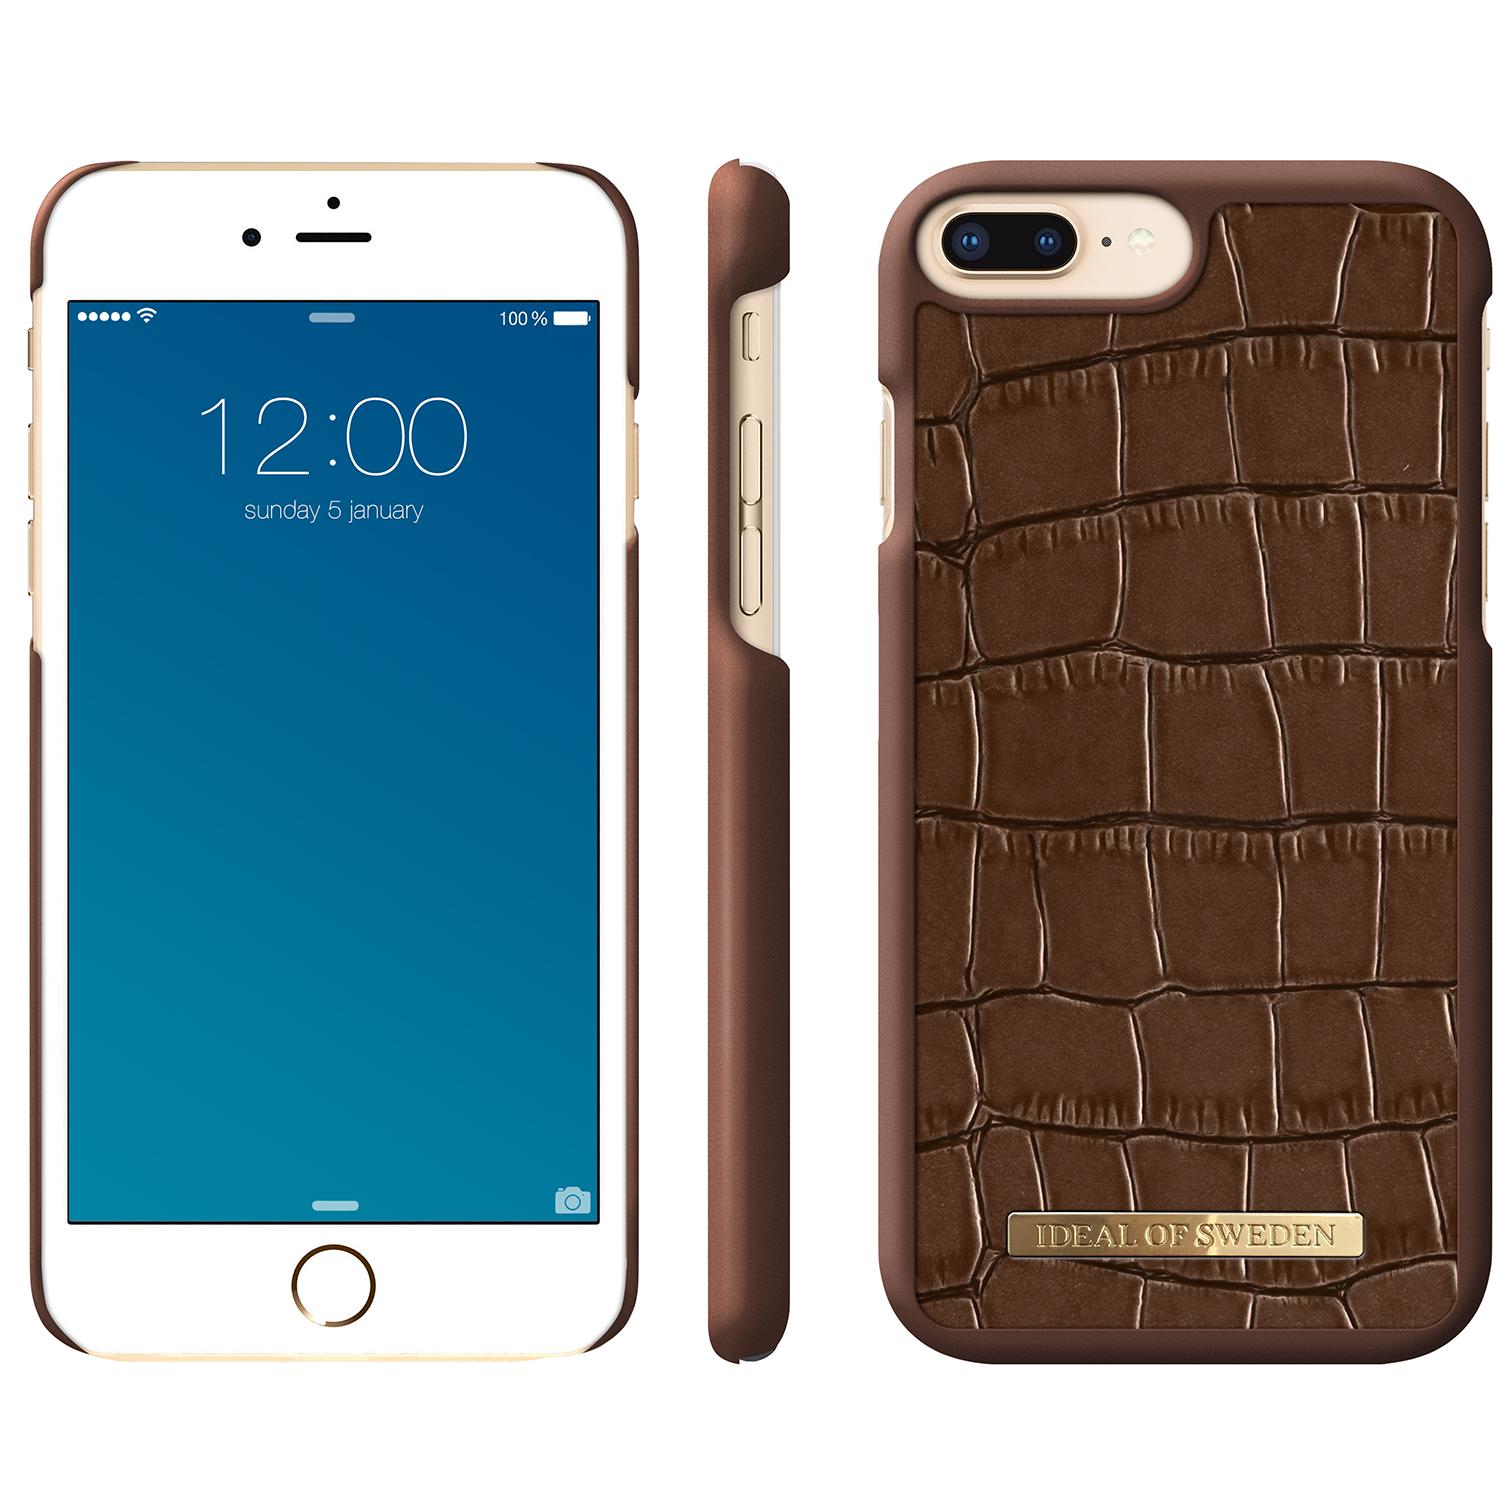 Capri Case iPhone 6/6S/7/8 Plus Brown